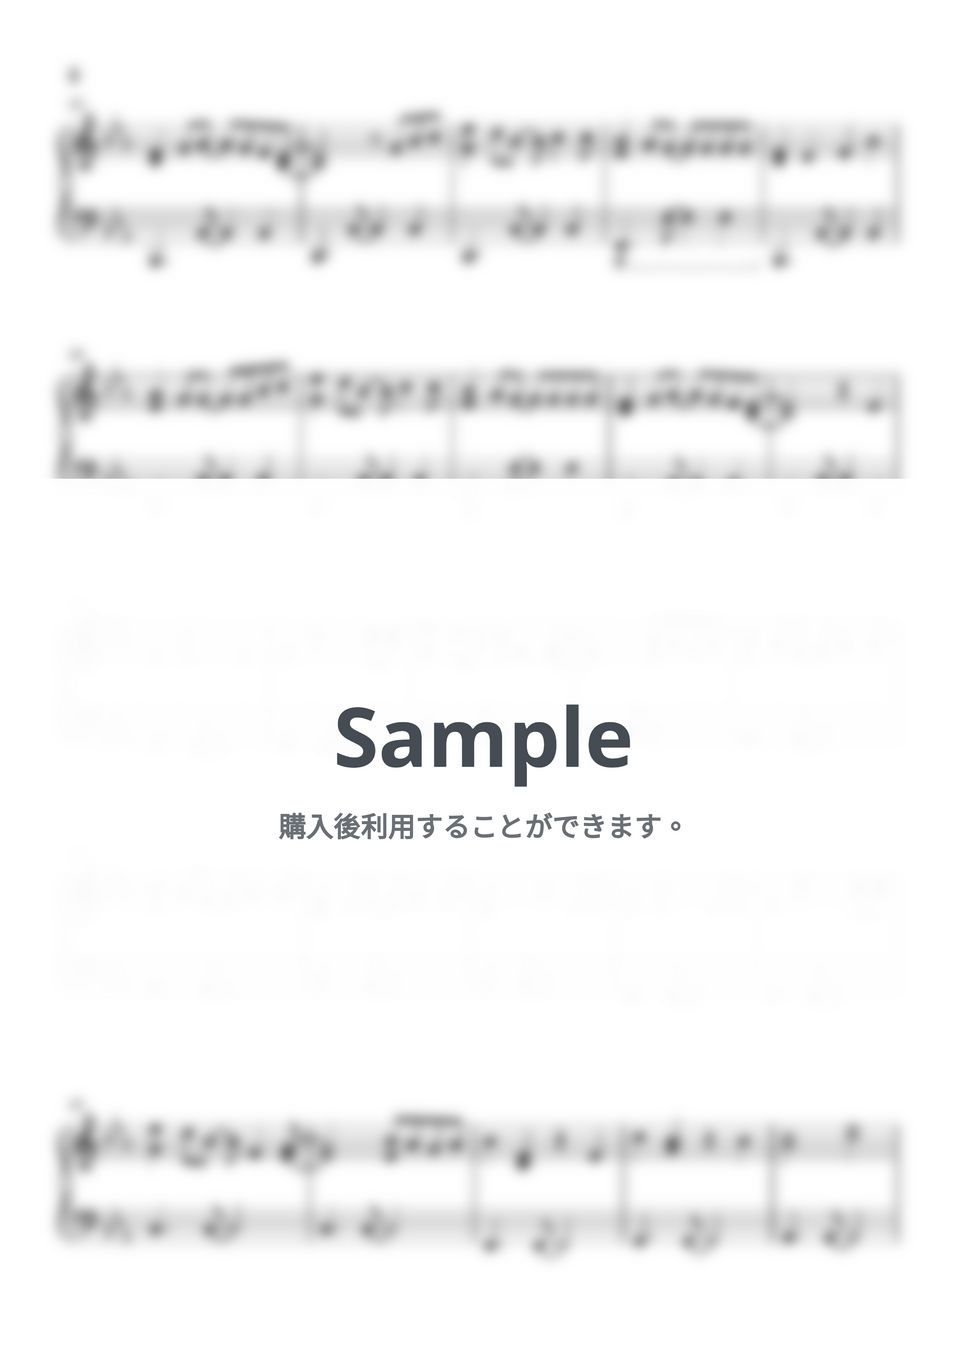 米津玄師 - ピースサイン (僕のヒーローアカデミア / ピアノ楽譜 / 中級) by Piano Lovers. jp